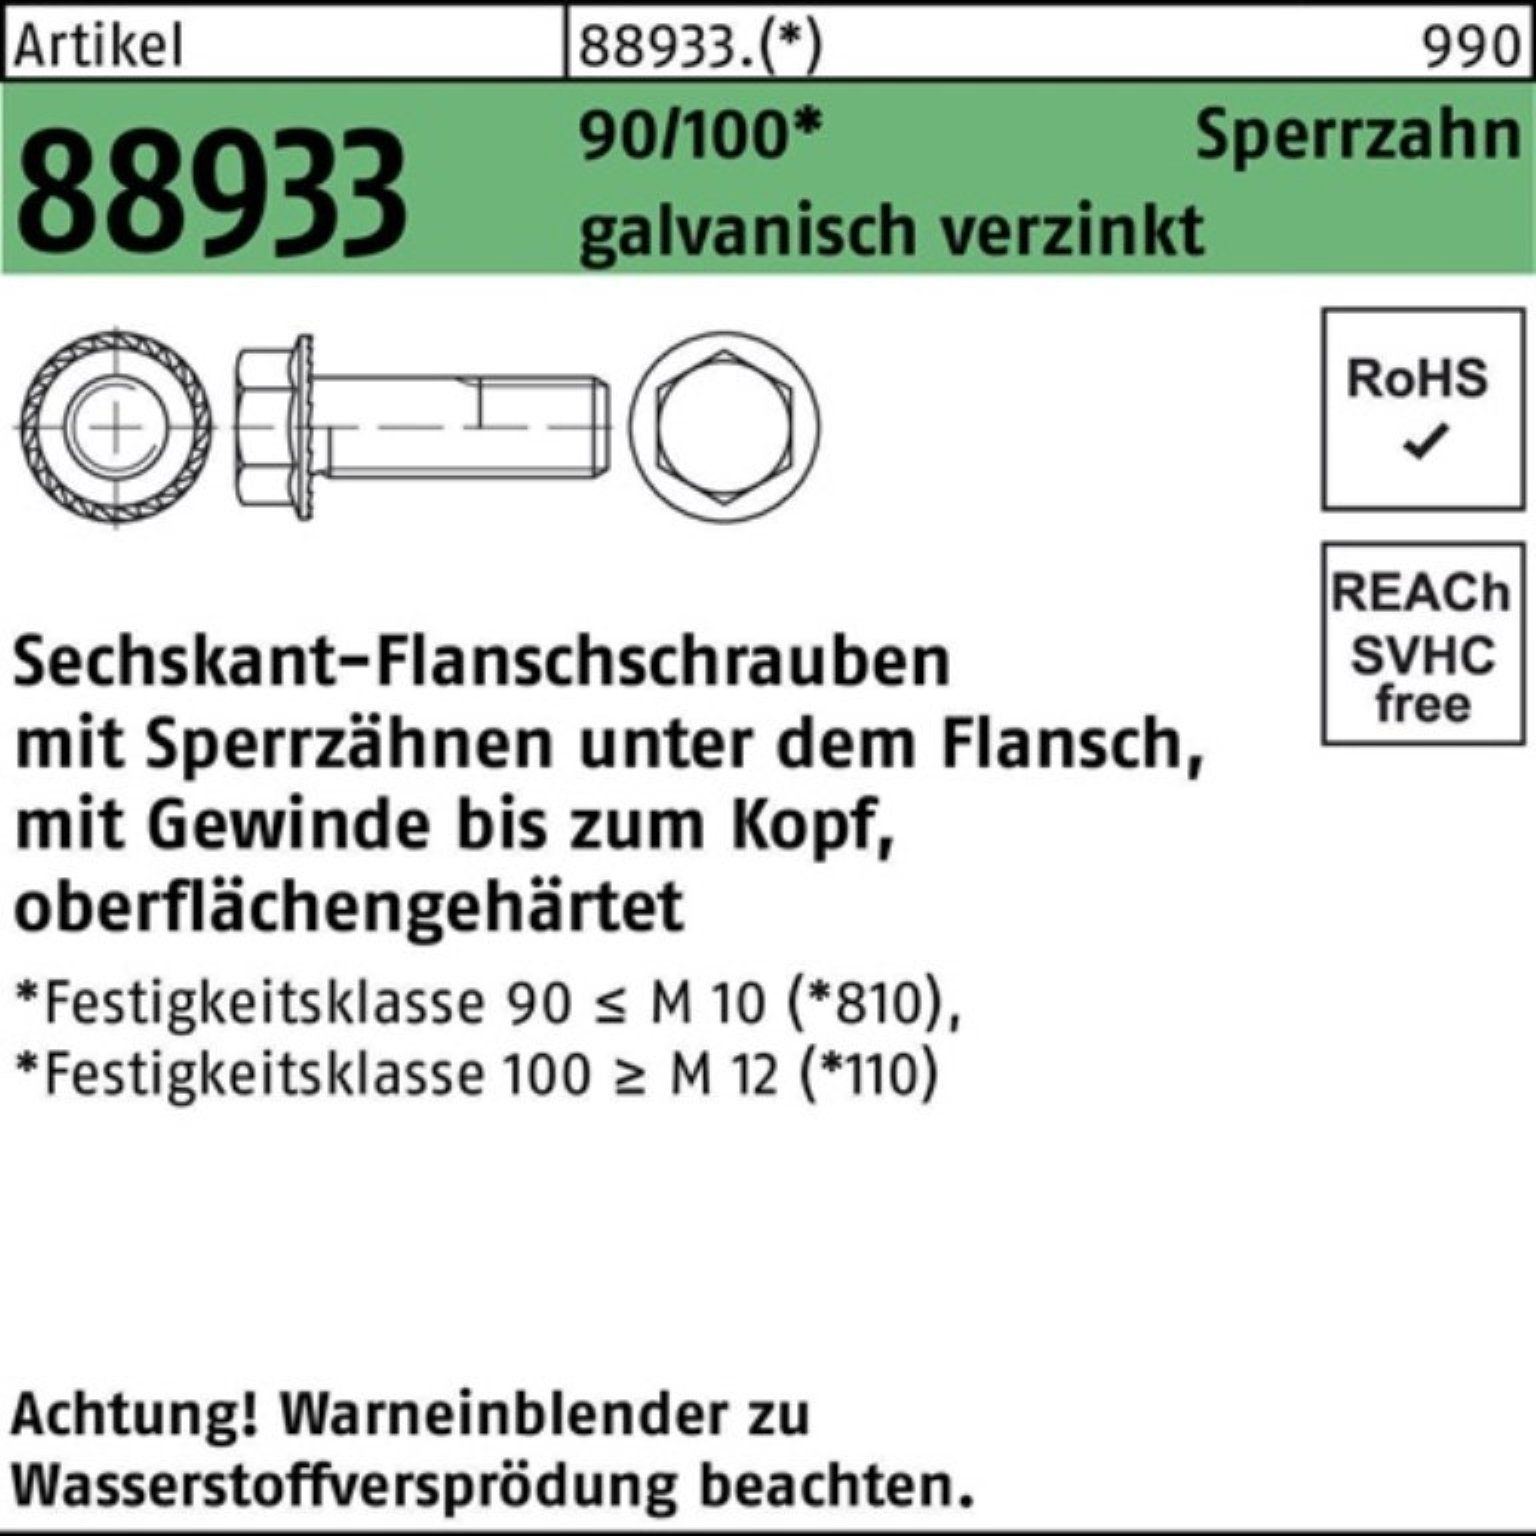 88933 ga Sechskantflanschschraube Reyher 90/100 M6x25 Pack 500er VG Schraube R Sperrz.